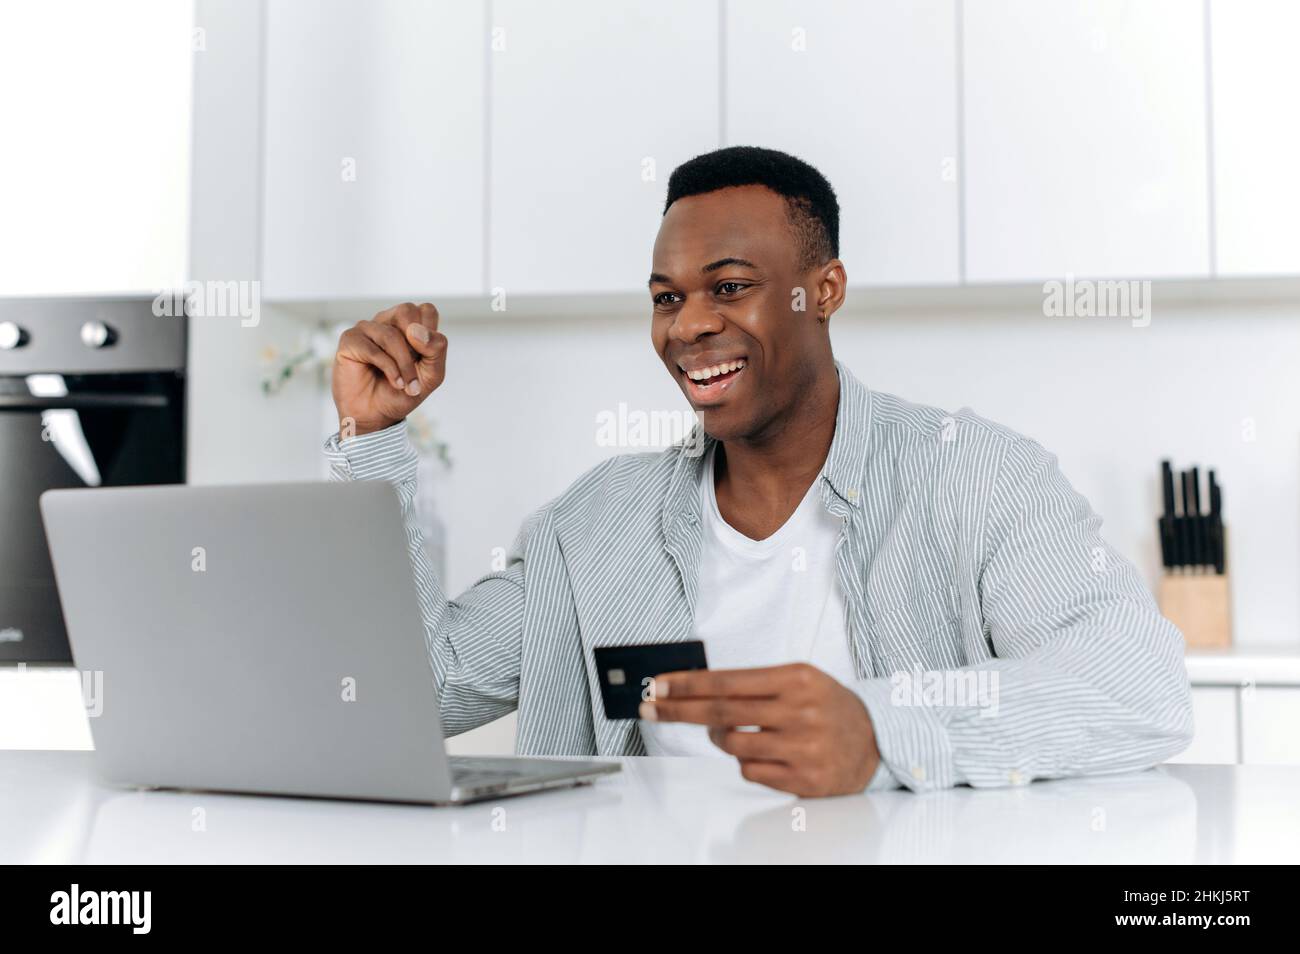 Internet-Shopping. Attraktiv, zufrieden, jung, erwachsen, afroamerikanischer Kerl, Sitzen an einem Tisch in der Küche, Online-Einkäufe auf Websites und Anwendungen, Eingabe von Kartendaten, lächelnd. Stockfoto